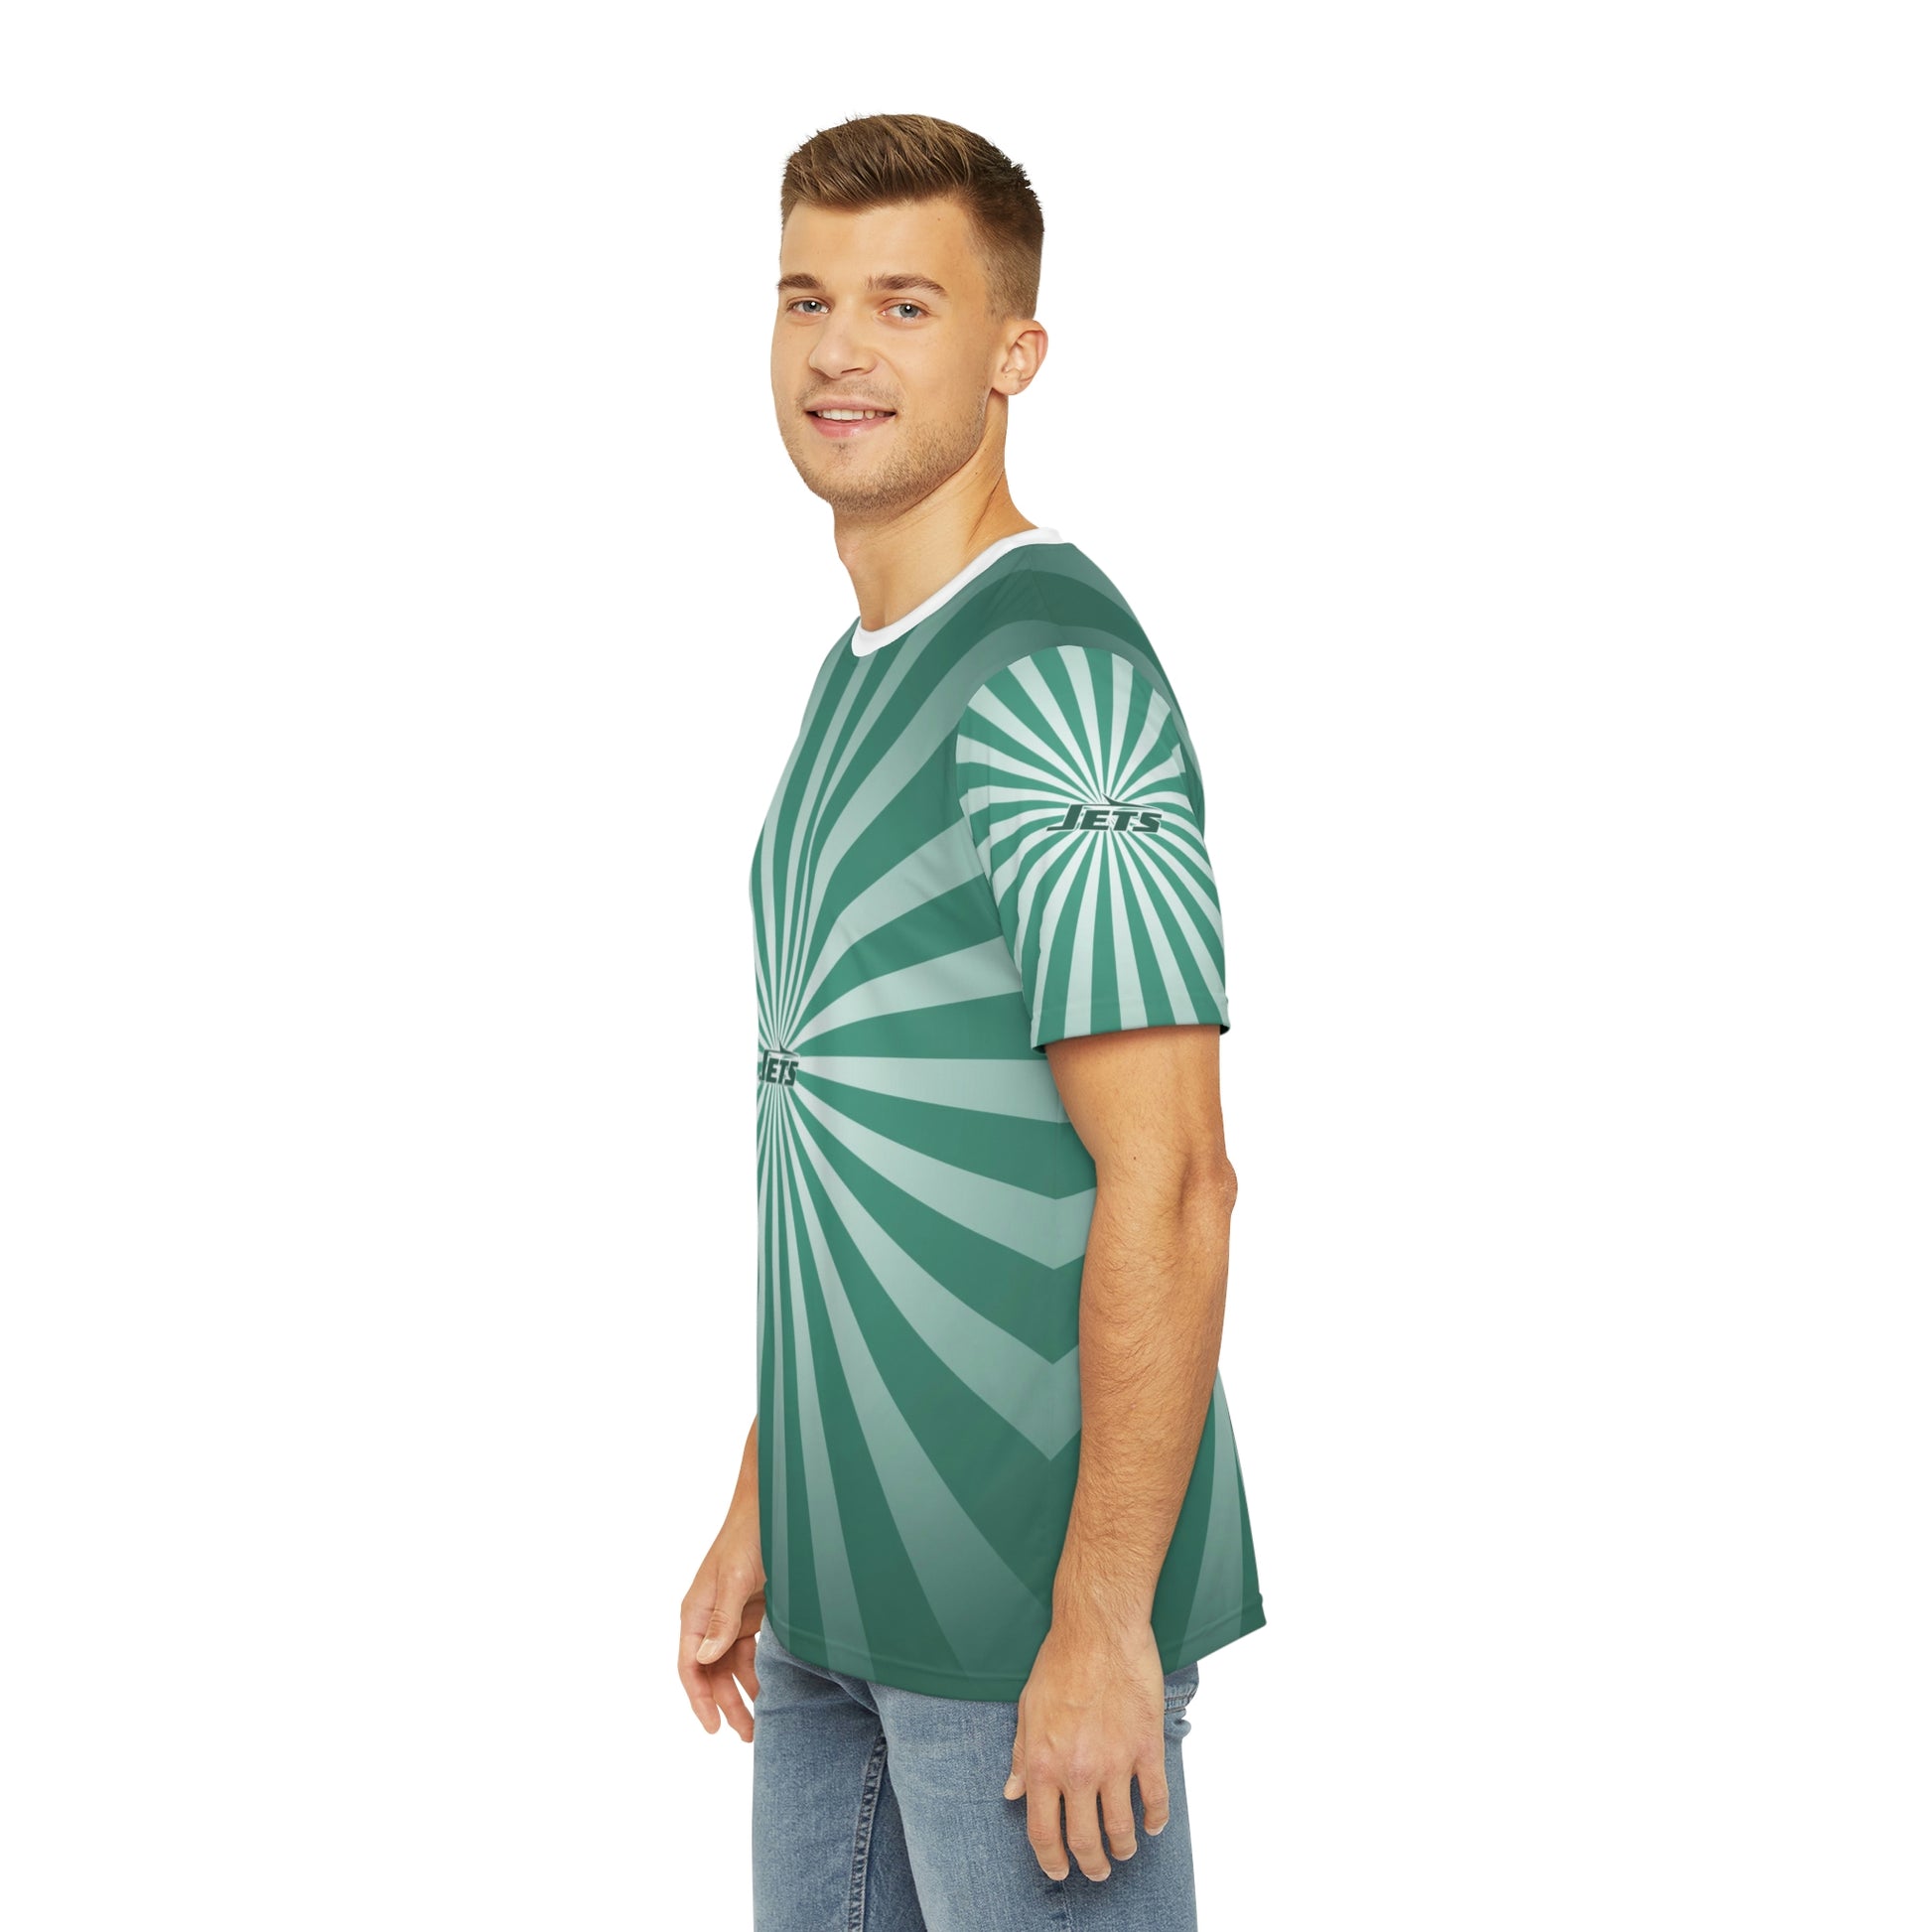 Geotrott NFL New York Jets Men's Polyester All Over Print Tee T-Shirt-All Over Prints-Geotrott